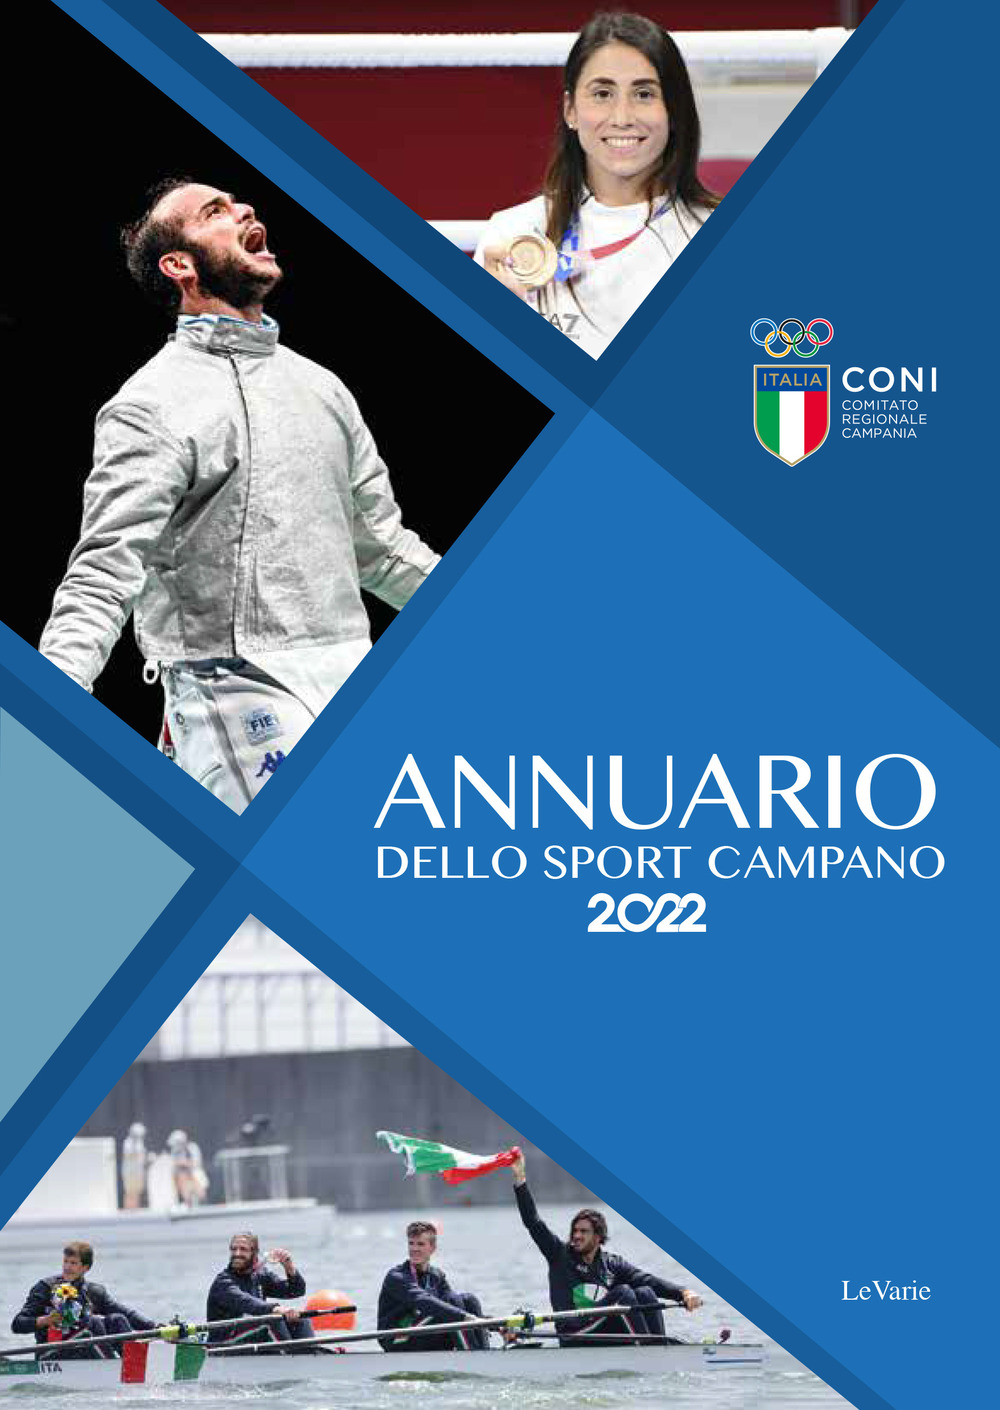 Annuario dello sport campano 2022